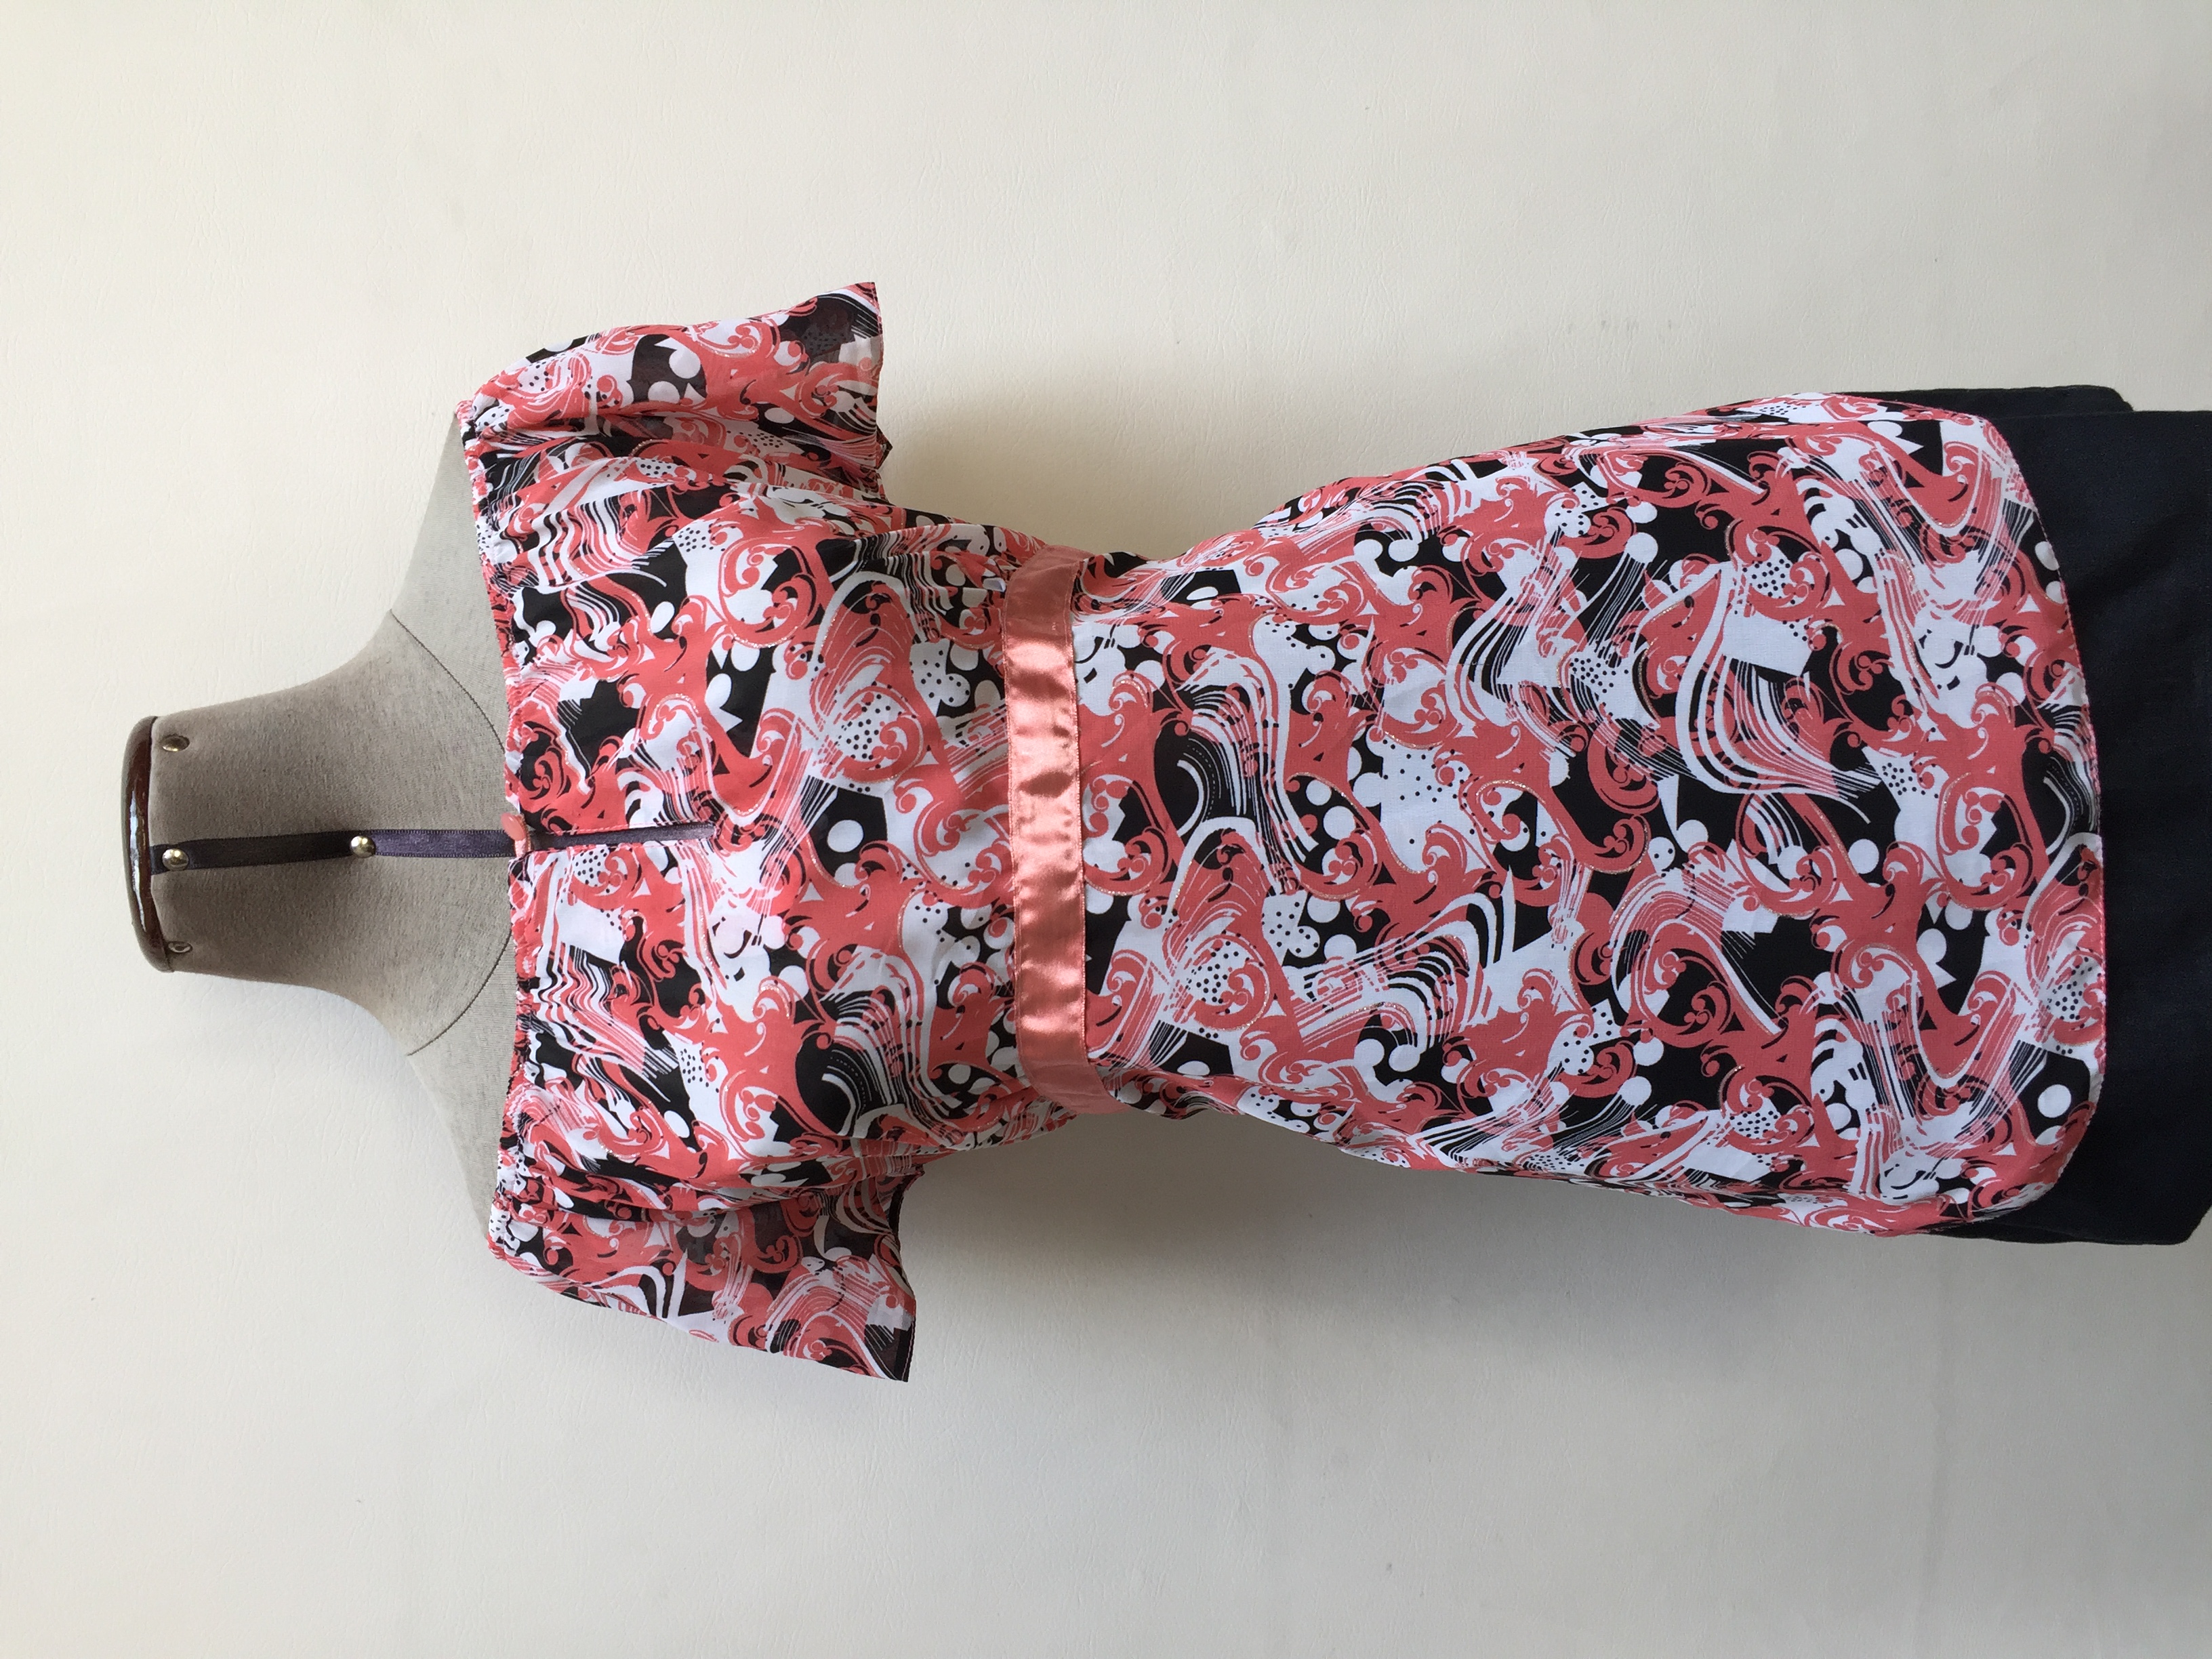 Blusa off shoulder de gasa con estampado en tonos coral, blanco y negro, elástico en los hombros, botón y escote delantero
Talla M